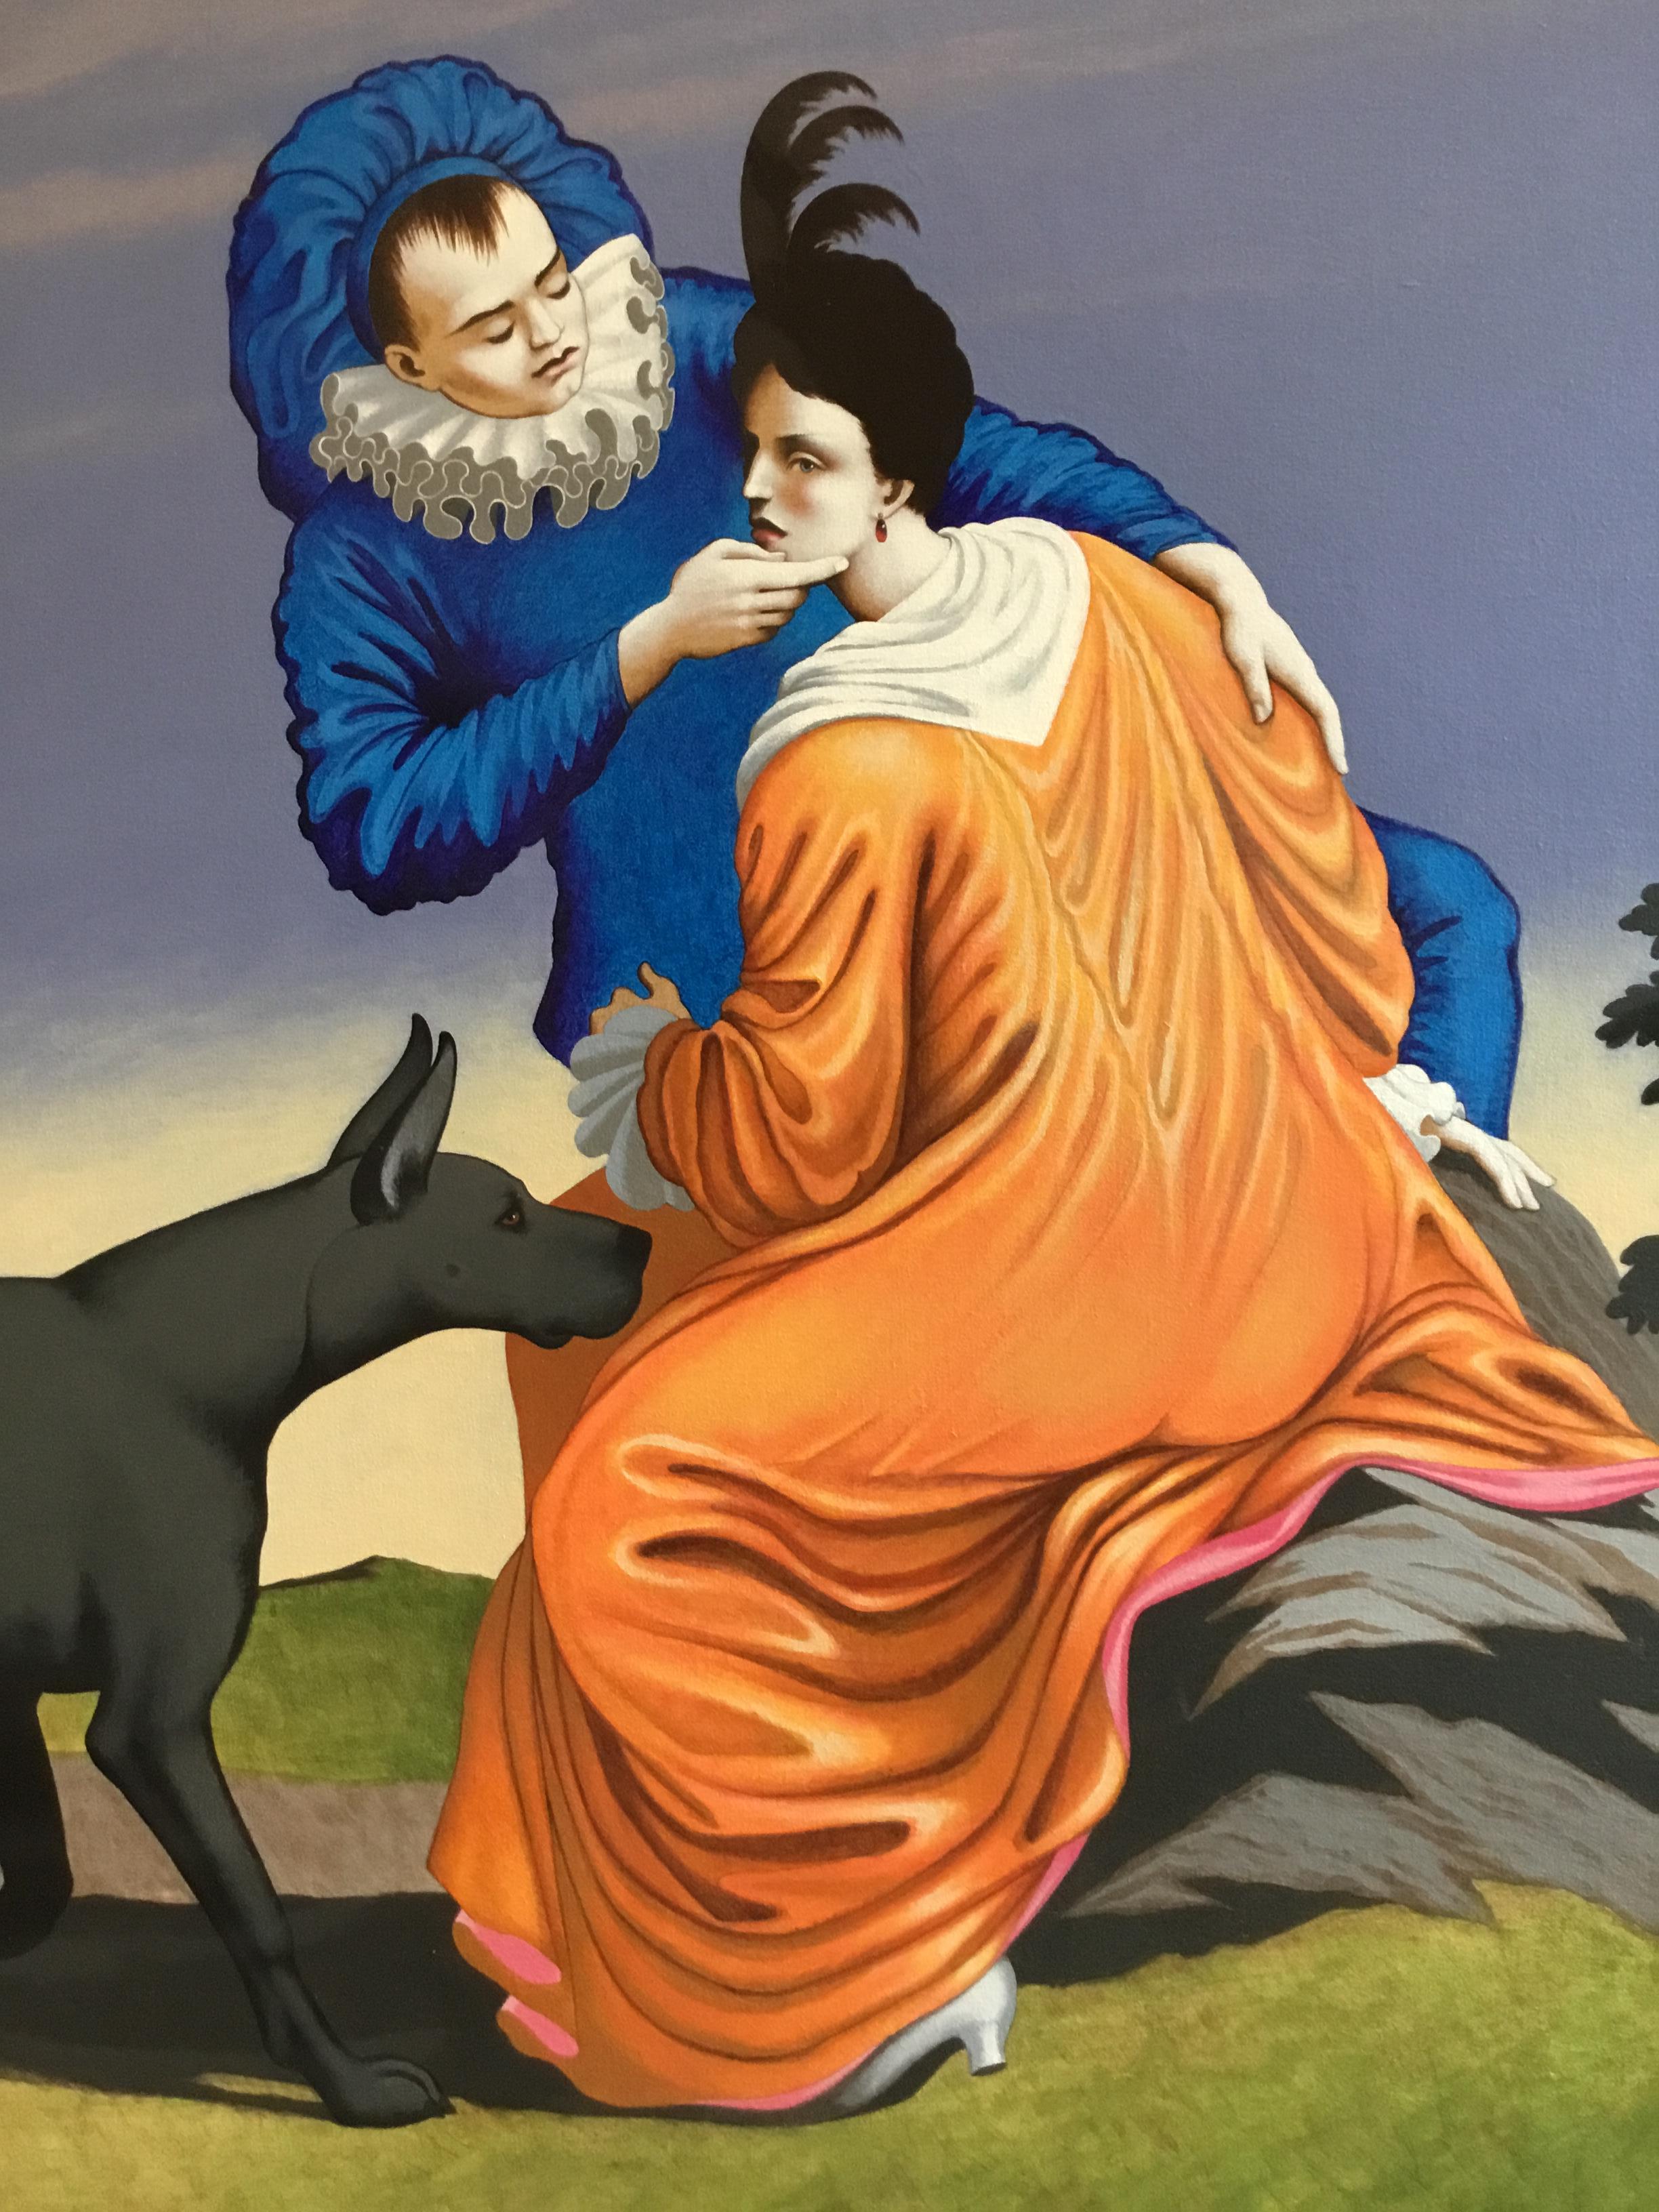 LIAISONEN I
Originalgemälde von Lynn Curlee
Eines von acht Gemälden, die auf französischen Kupferstichen aus dem 17.
Jedes Bild zeigt einen Mann, eine Frau und einen Hund.
Herr Curlee ist Galerist und Autor/Illustrator von preisgekrönten